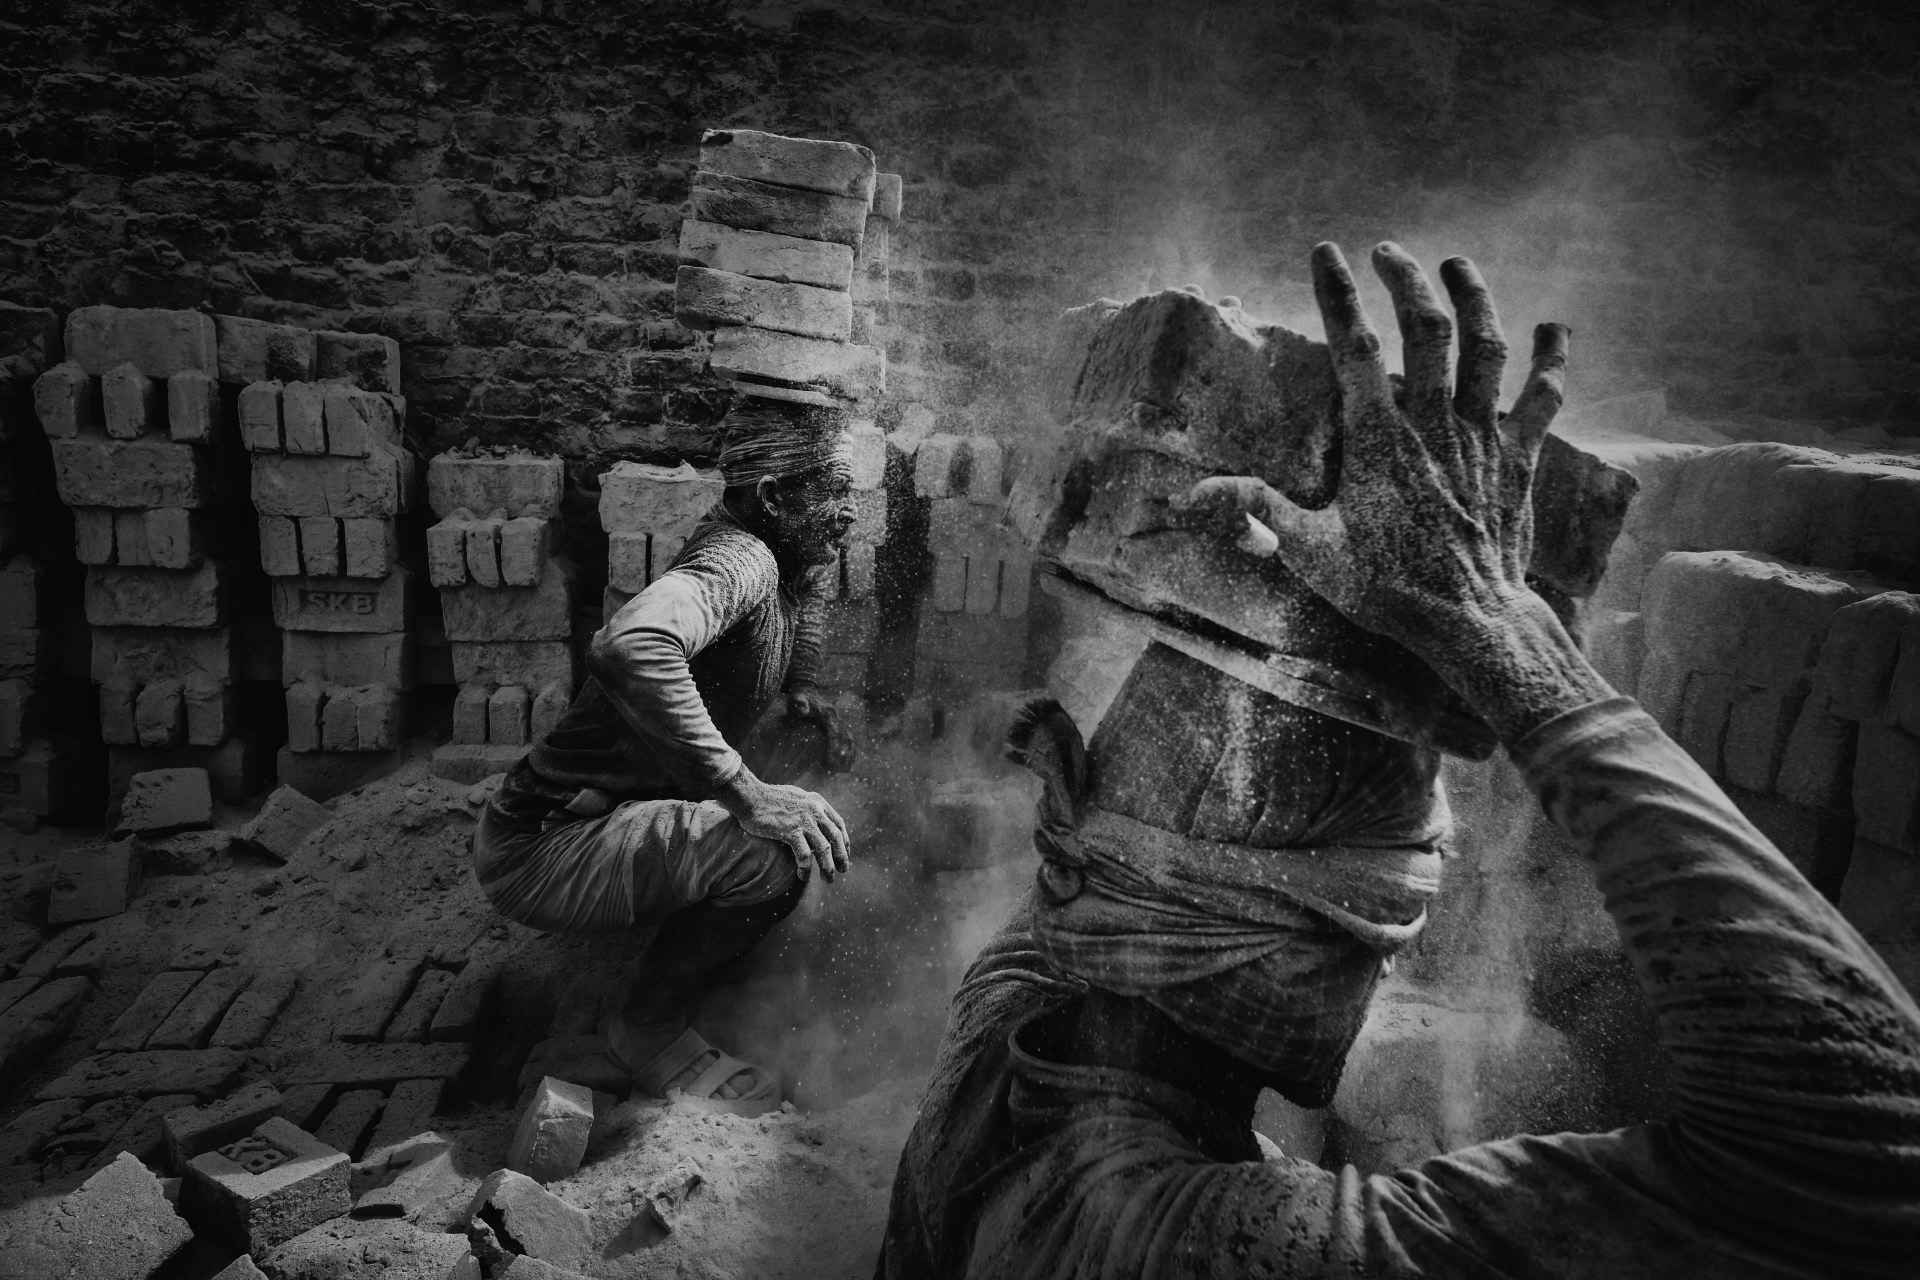 Bricks by Alain Schroeder